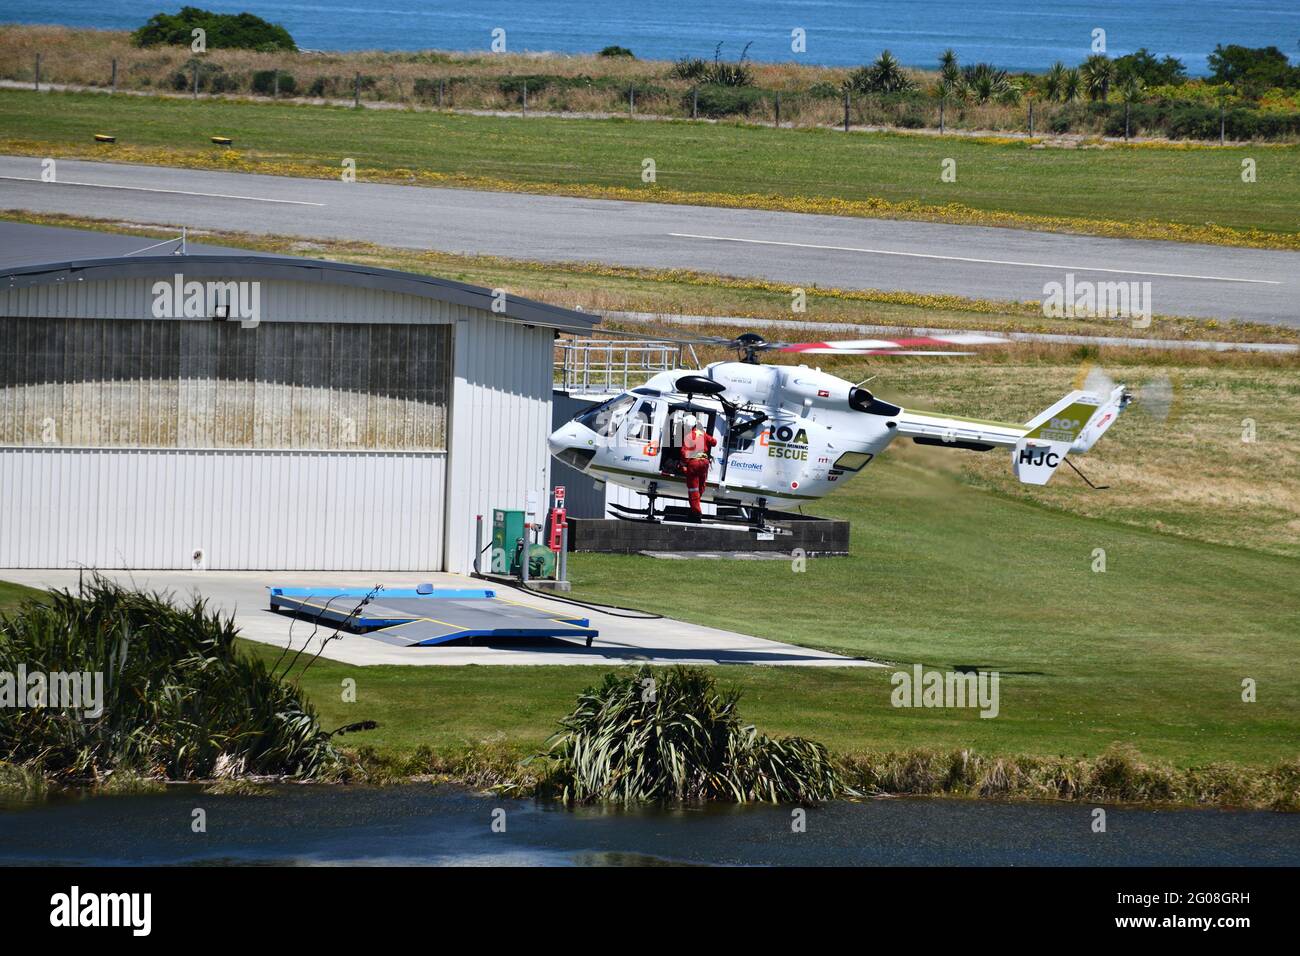 GREYMOUTH, NUEVA ZELANDA, 15 DE ENERO de 2021: Un helicóptero de rescate y la tripulación practican operaciones de rescate en el aeropuerto de Greymouth Foto de stock